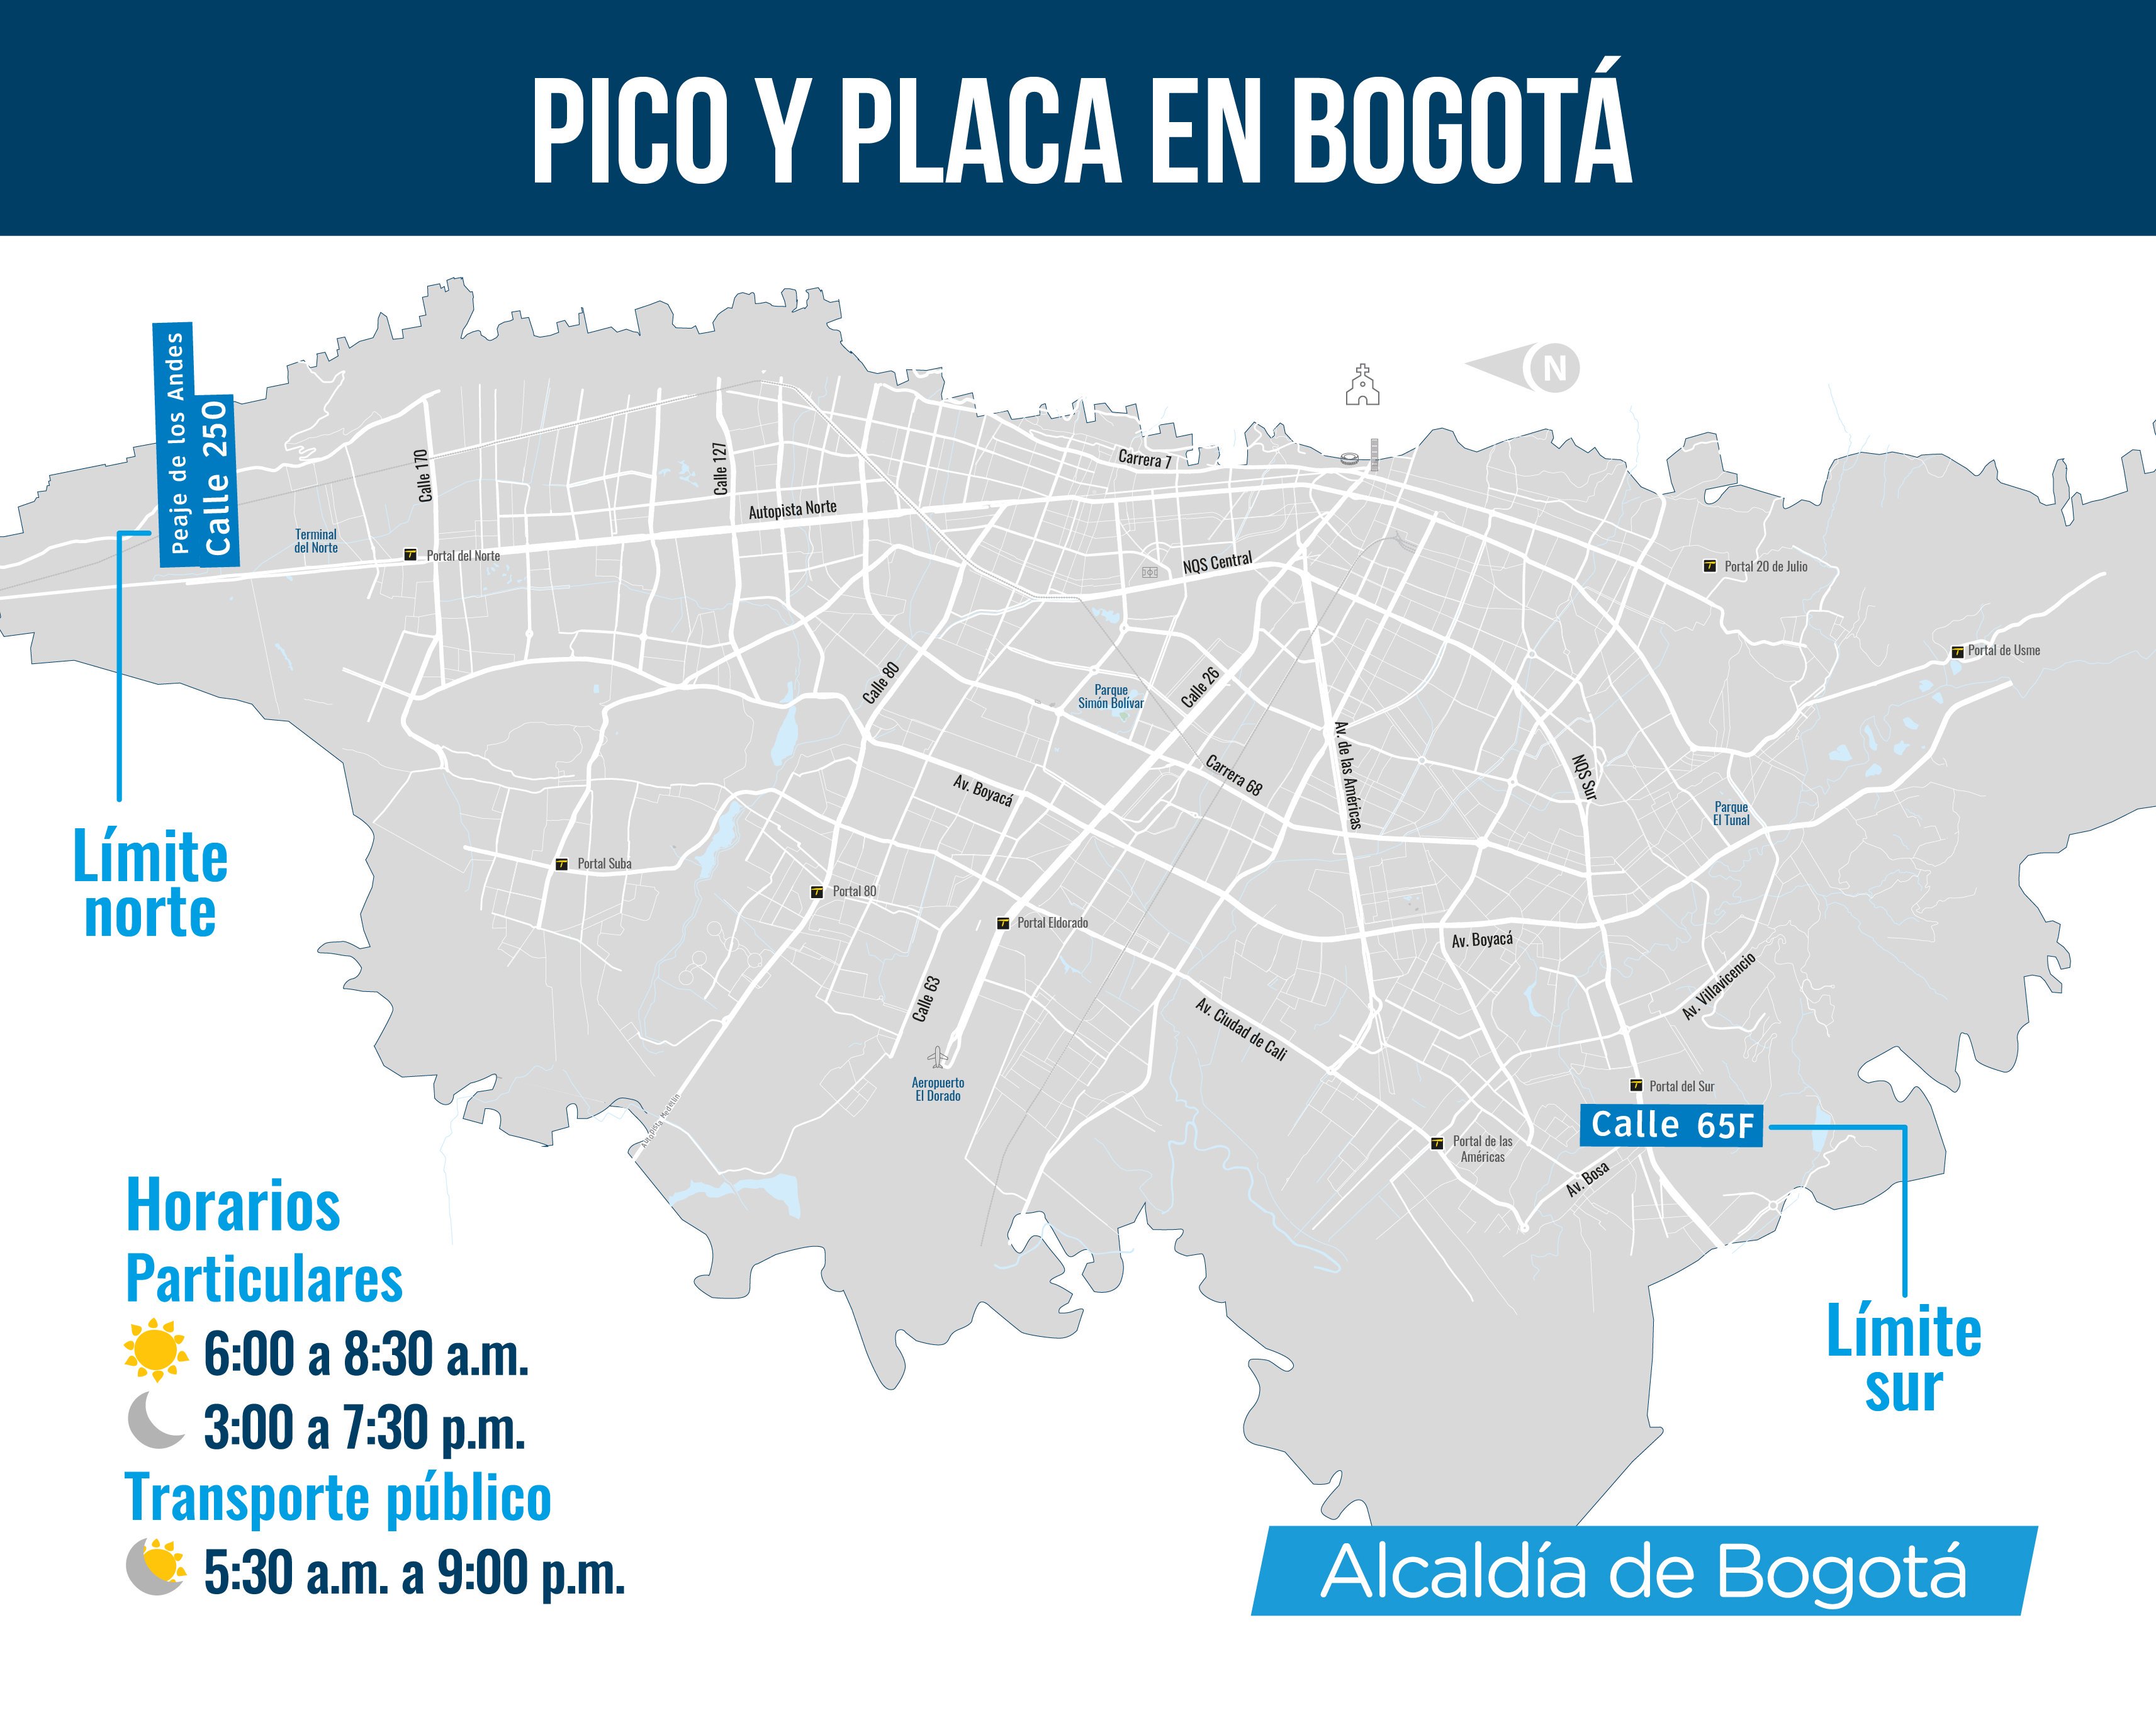 Mapa de Bogotá con el pico y placa del día lunes 8 de julio 